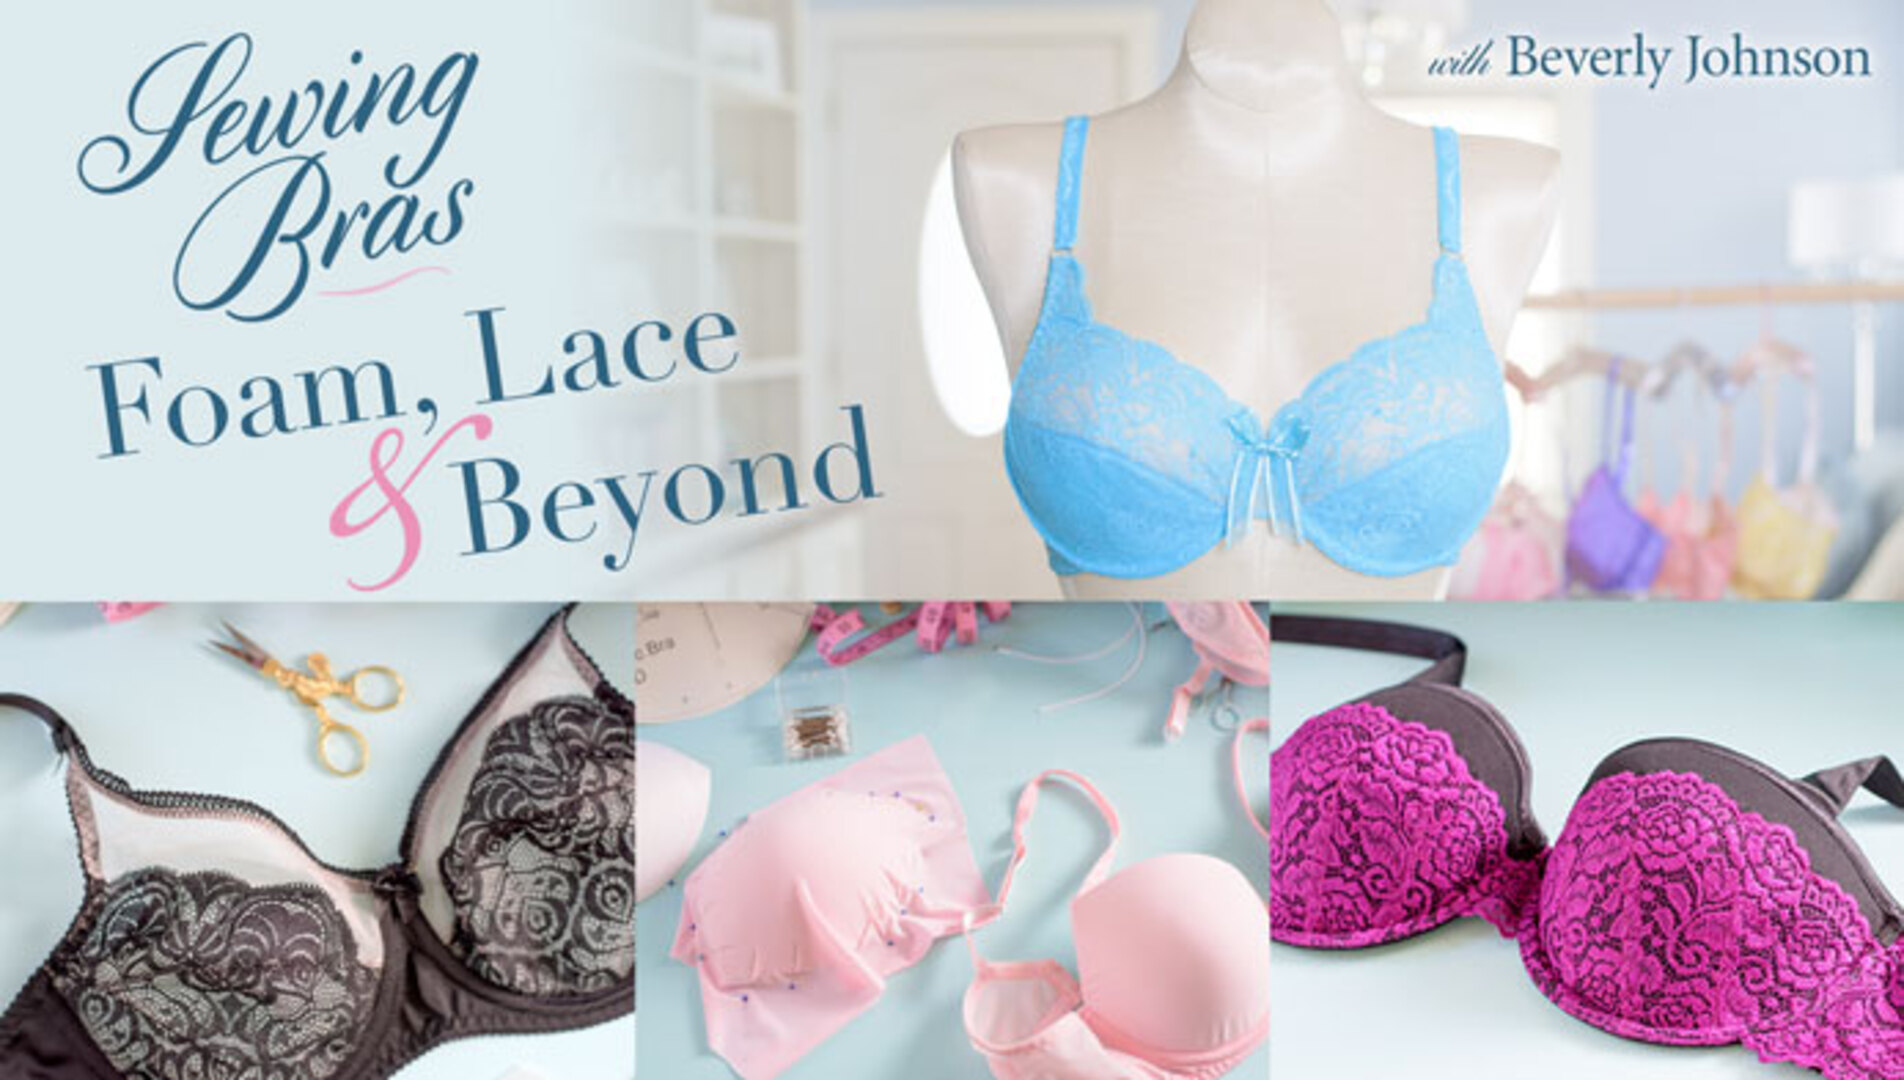 Sewing Bras: Foam, Lace & Beyond